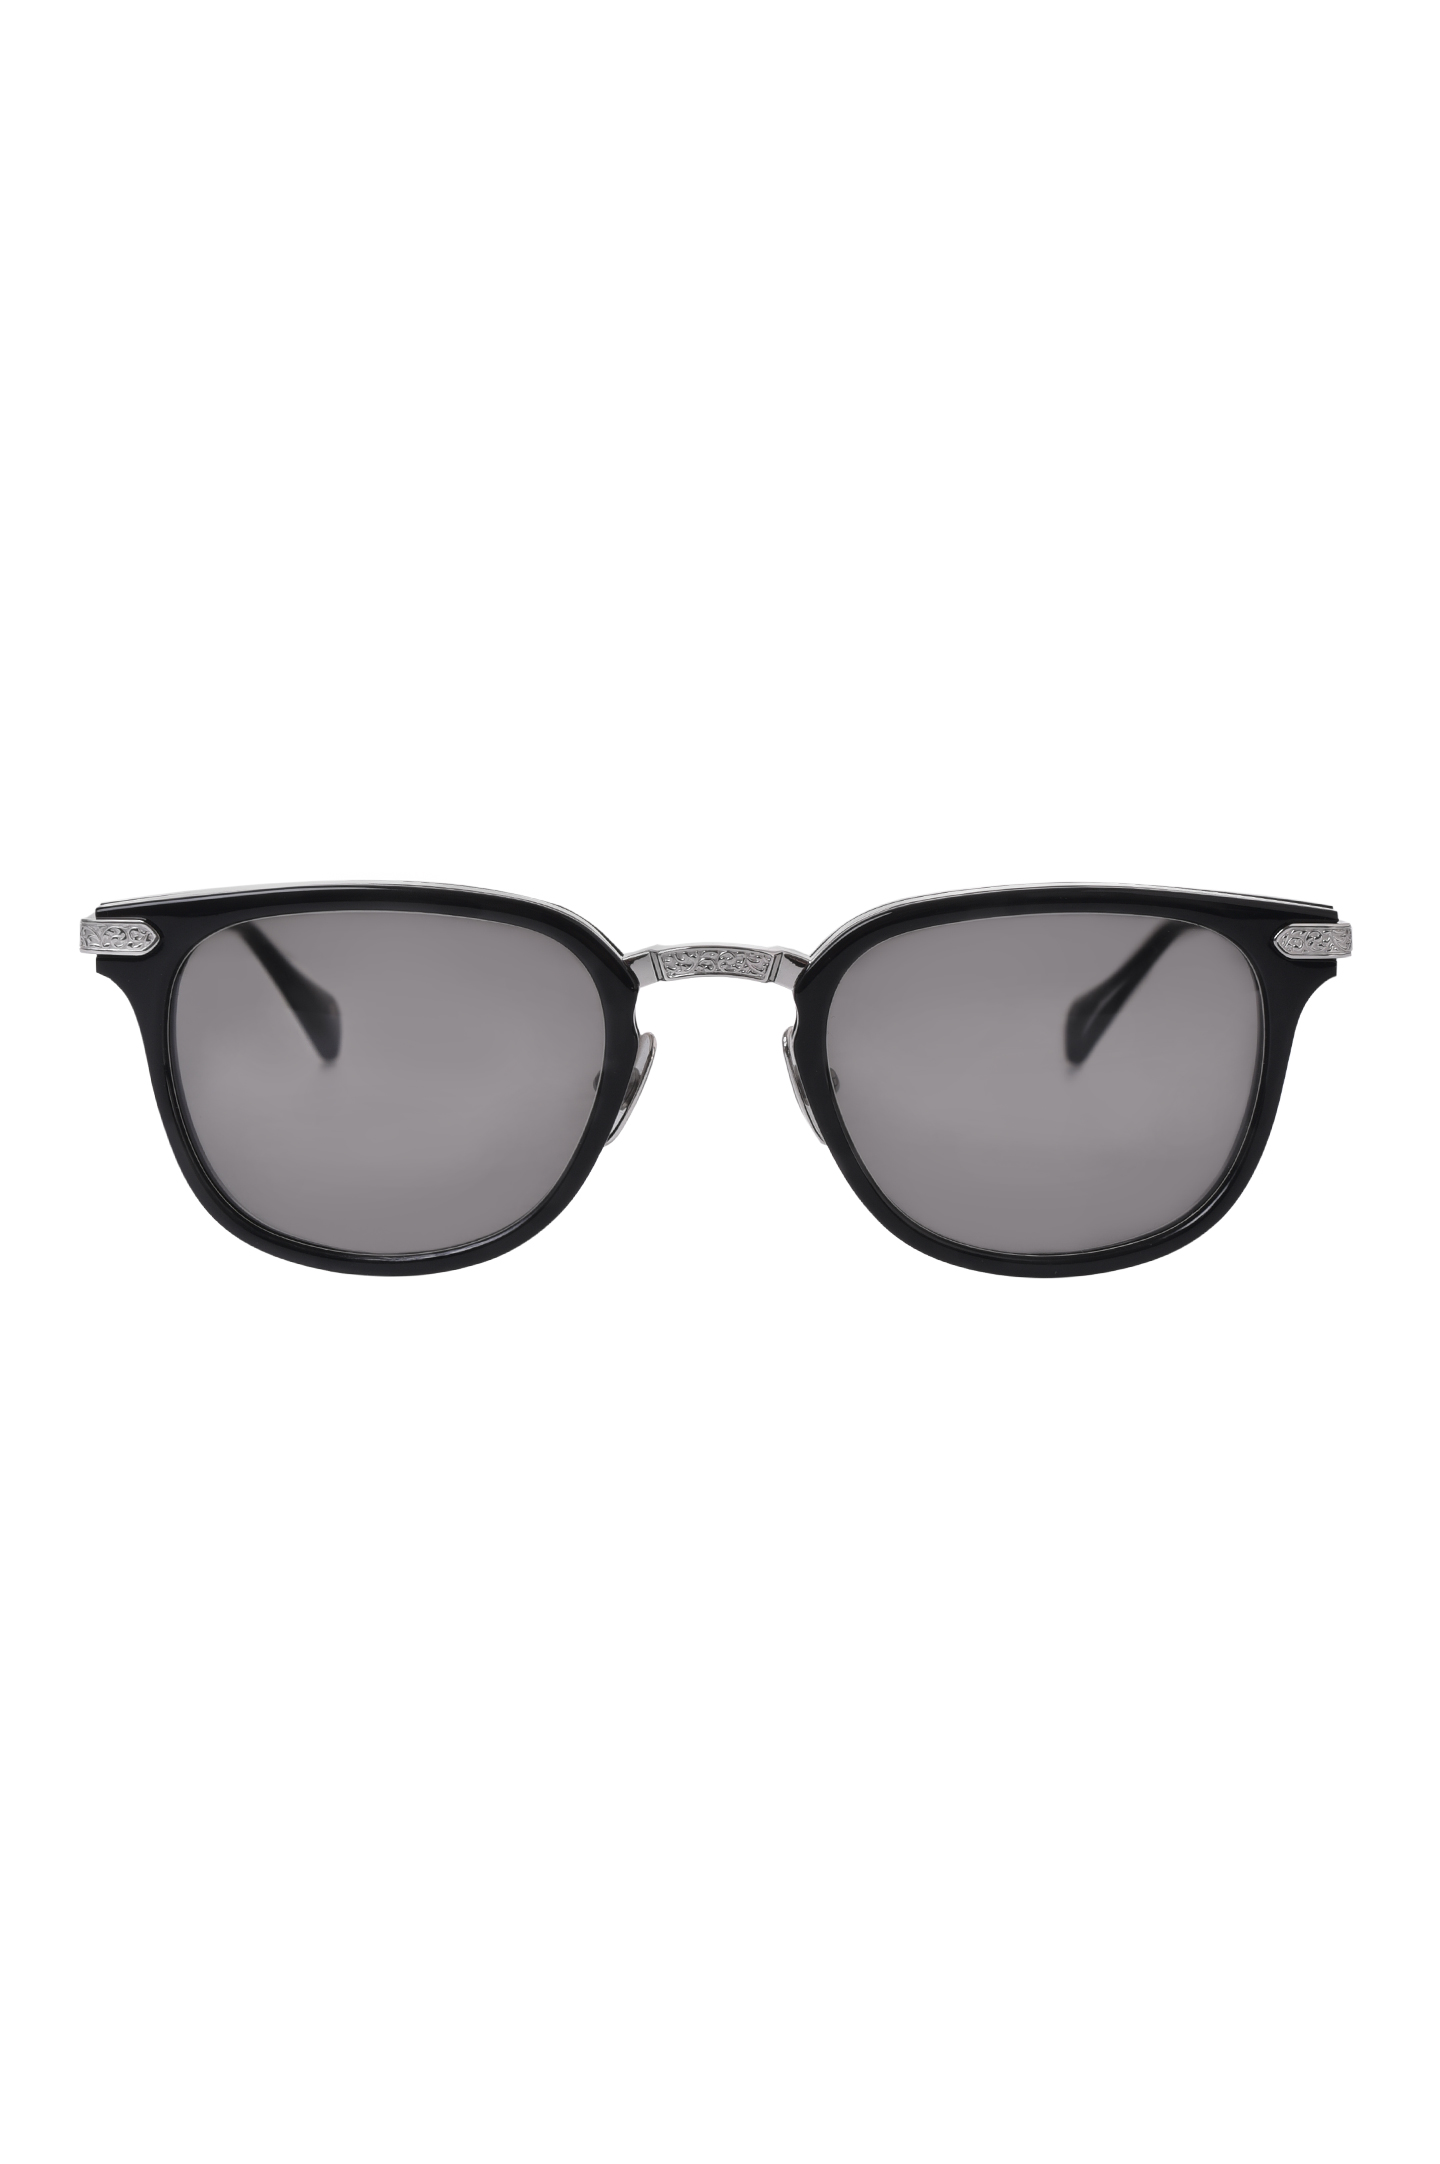 Солнцезащитные очки STEFANO RICCI SG13P MEACET, цвет: Черный, Мужской